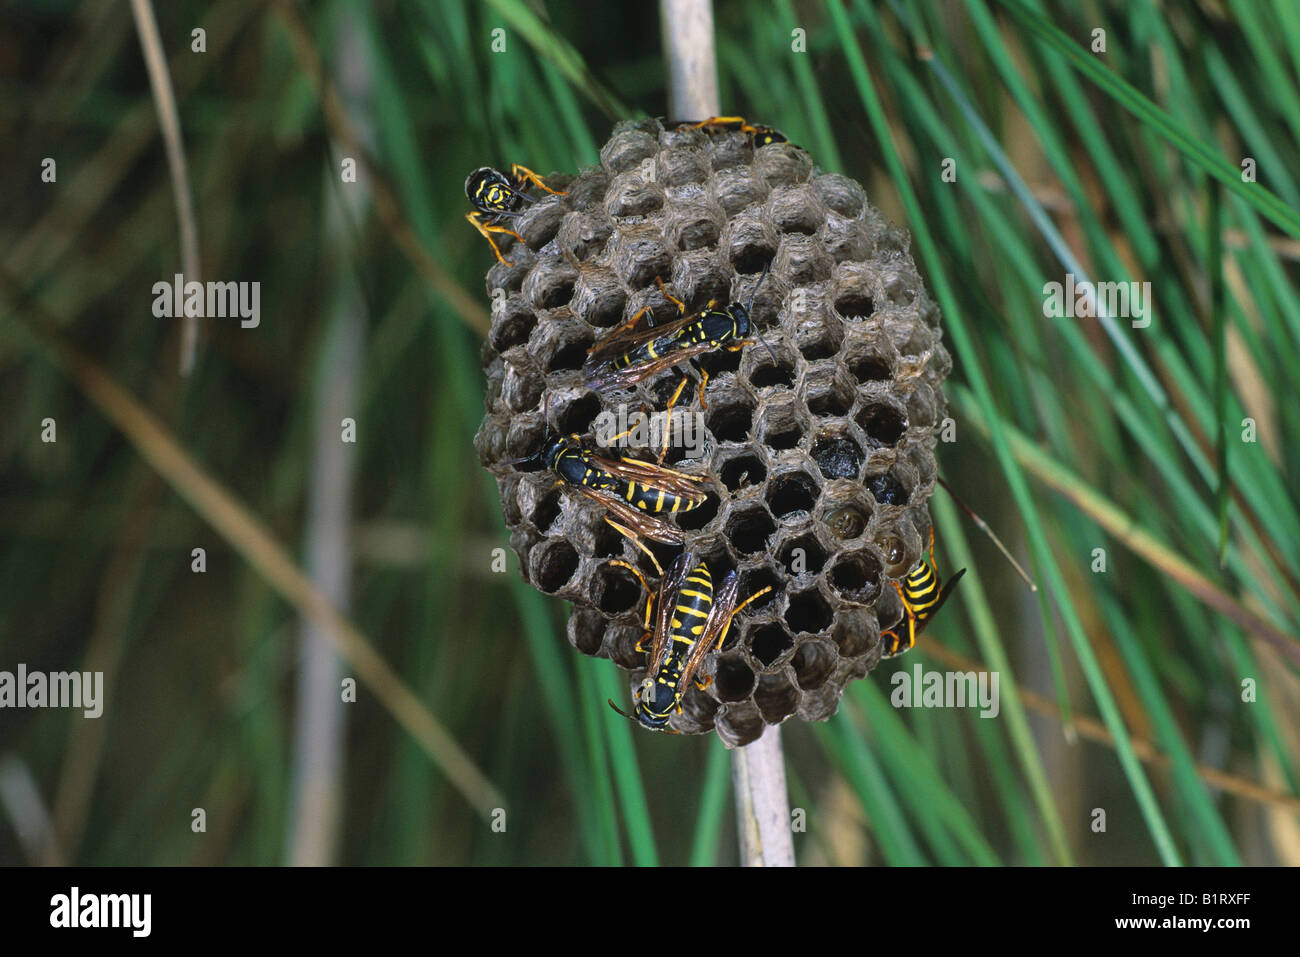 Les Guêpes Papetières Européennes (Polistes gallicus) au nid, vespiary, larves dans les chambres Banque D'Images